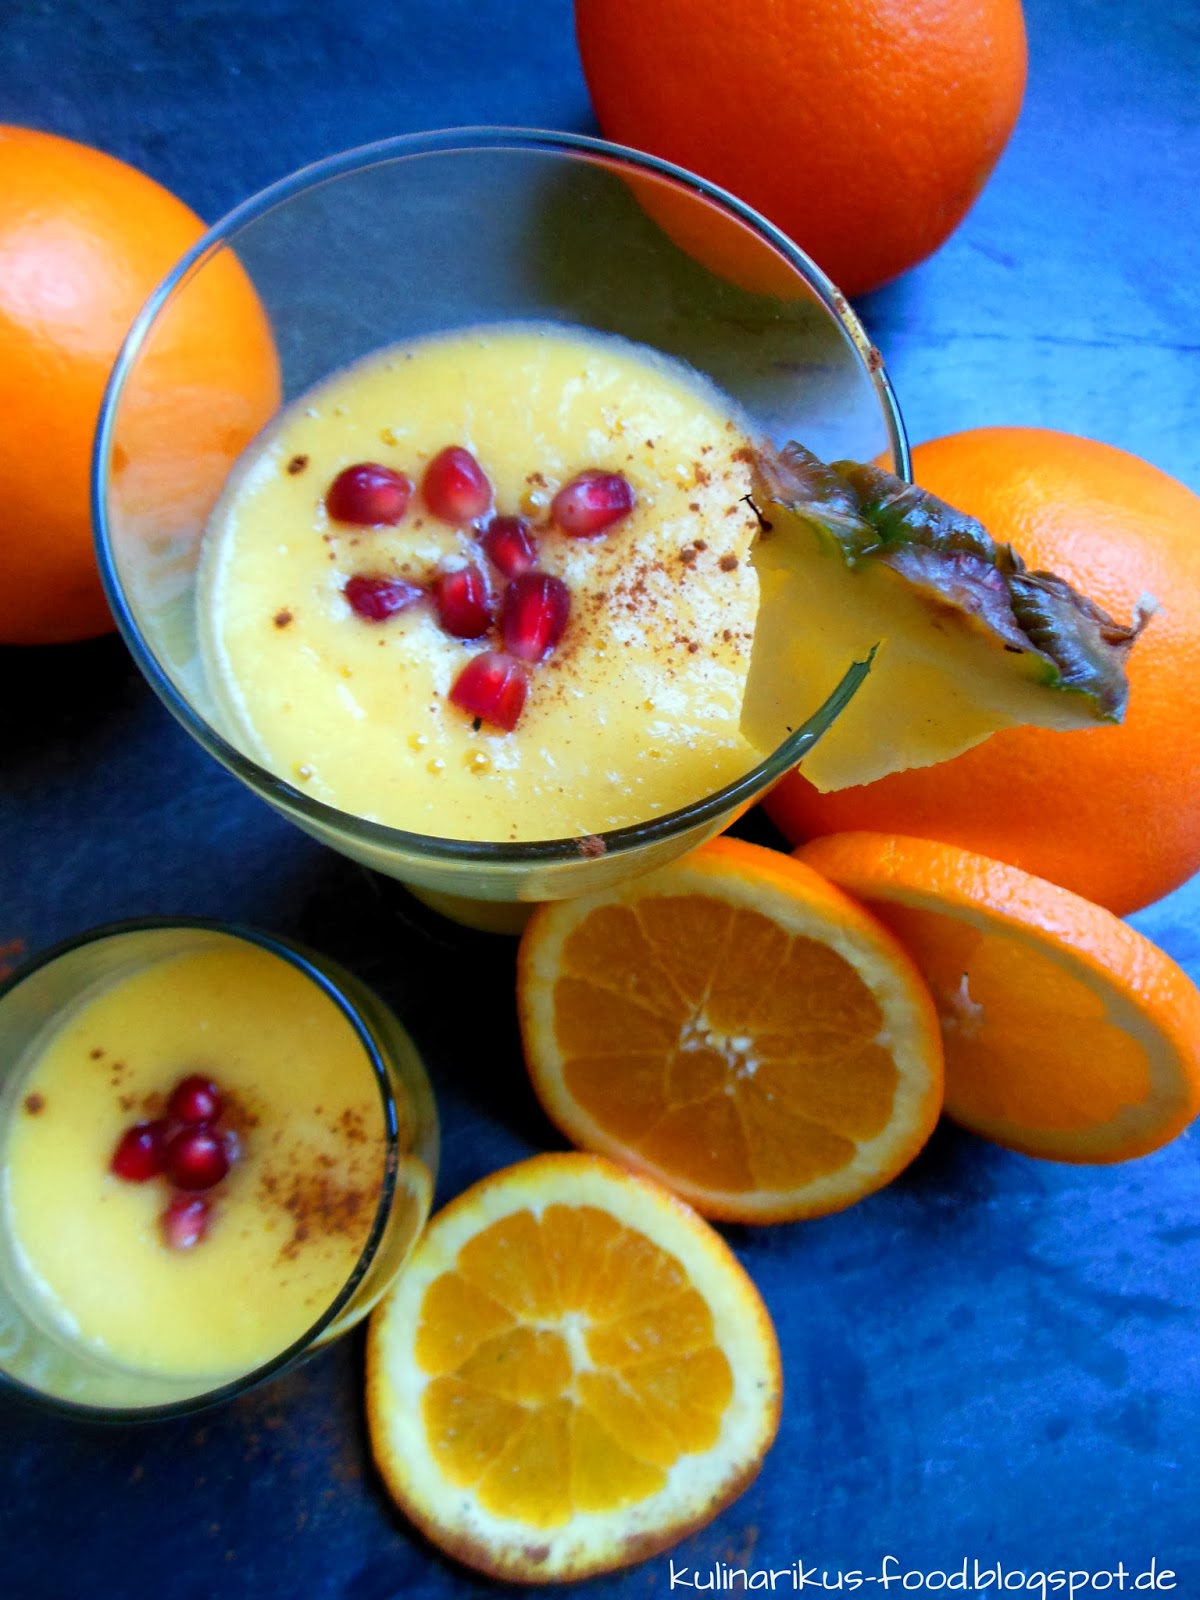 Kulinarikus: Orangen-Ananas-Smoothie mit Ingwer und Granatapfel